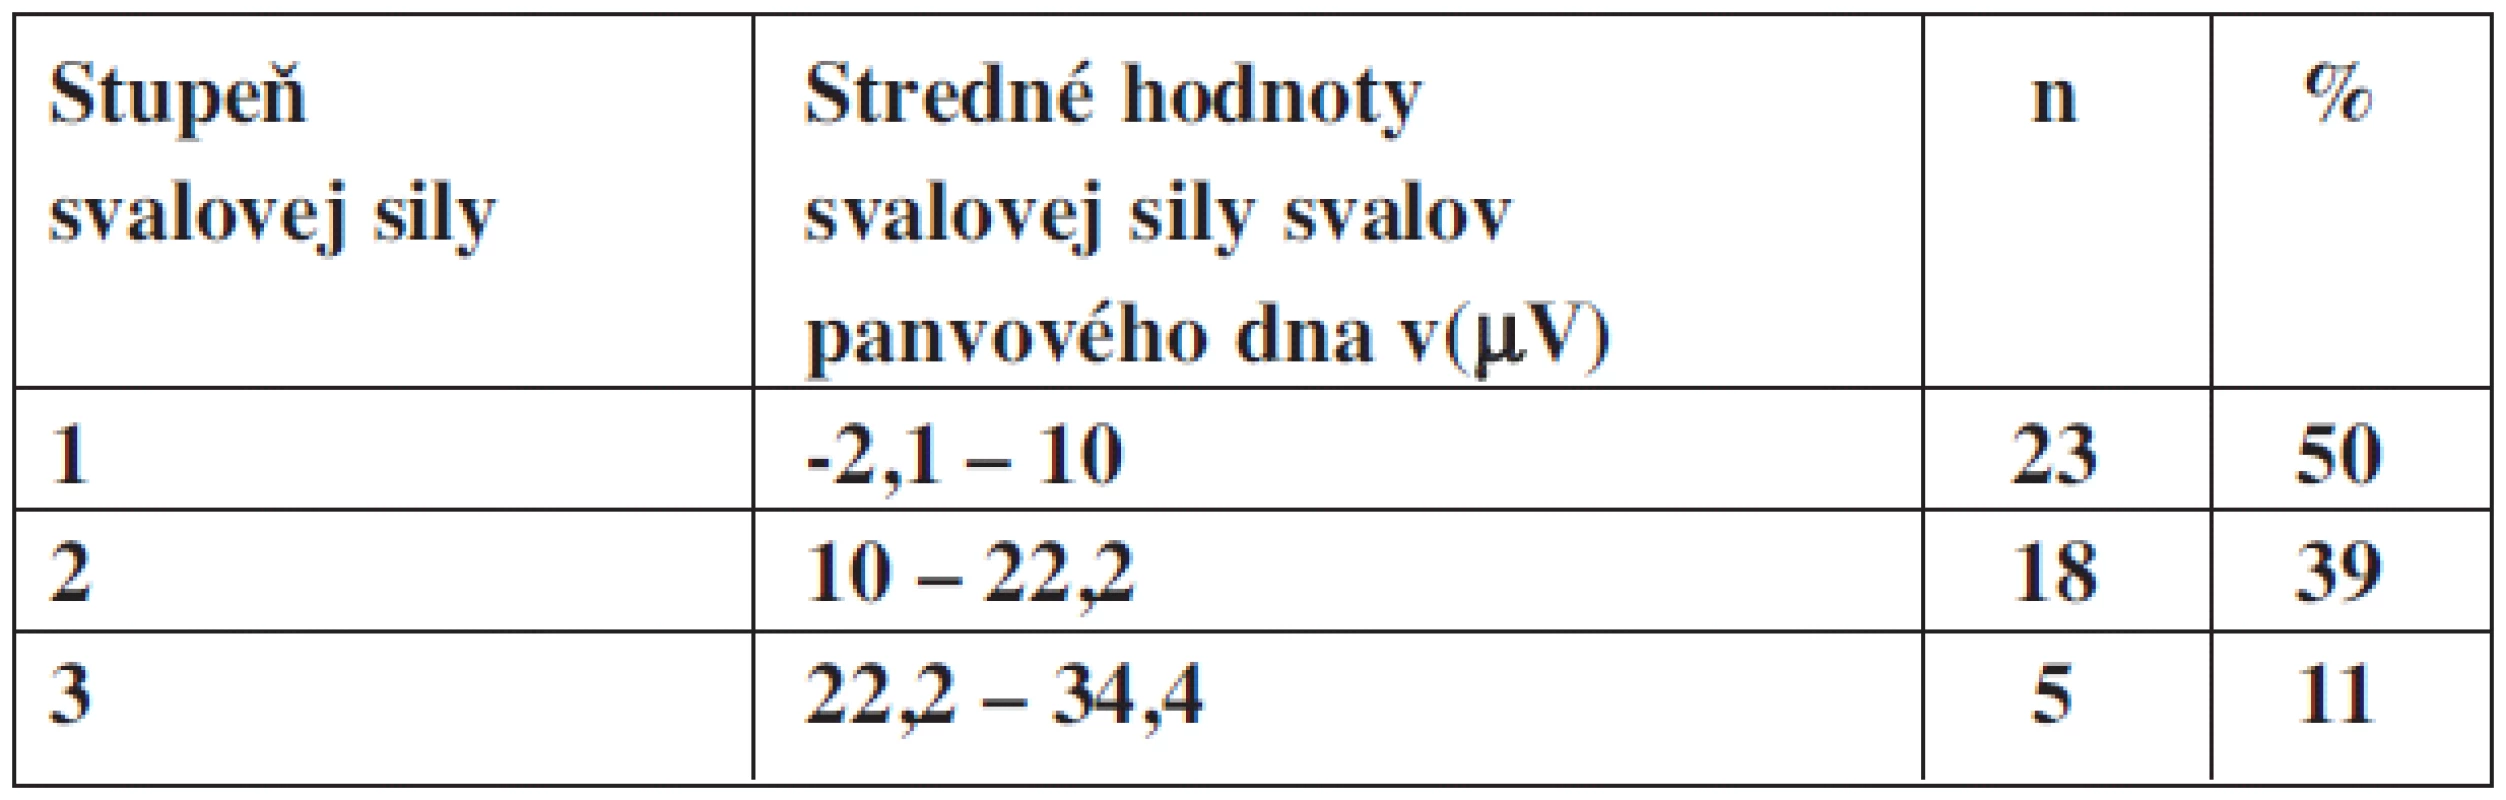 Stredné hodnoty svalovej sily v(μV) u svalov panvového dna v percentuálnom zastúpení u inkontinentných pacientok.